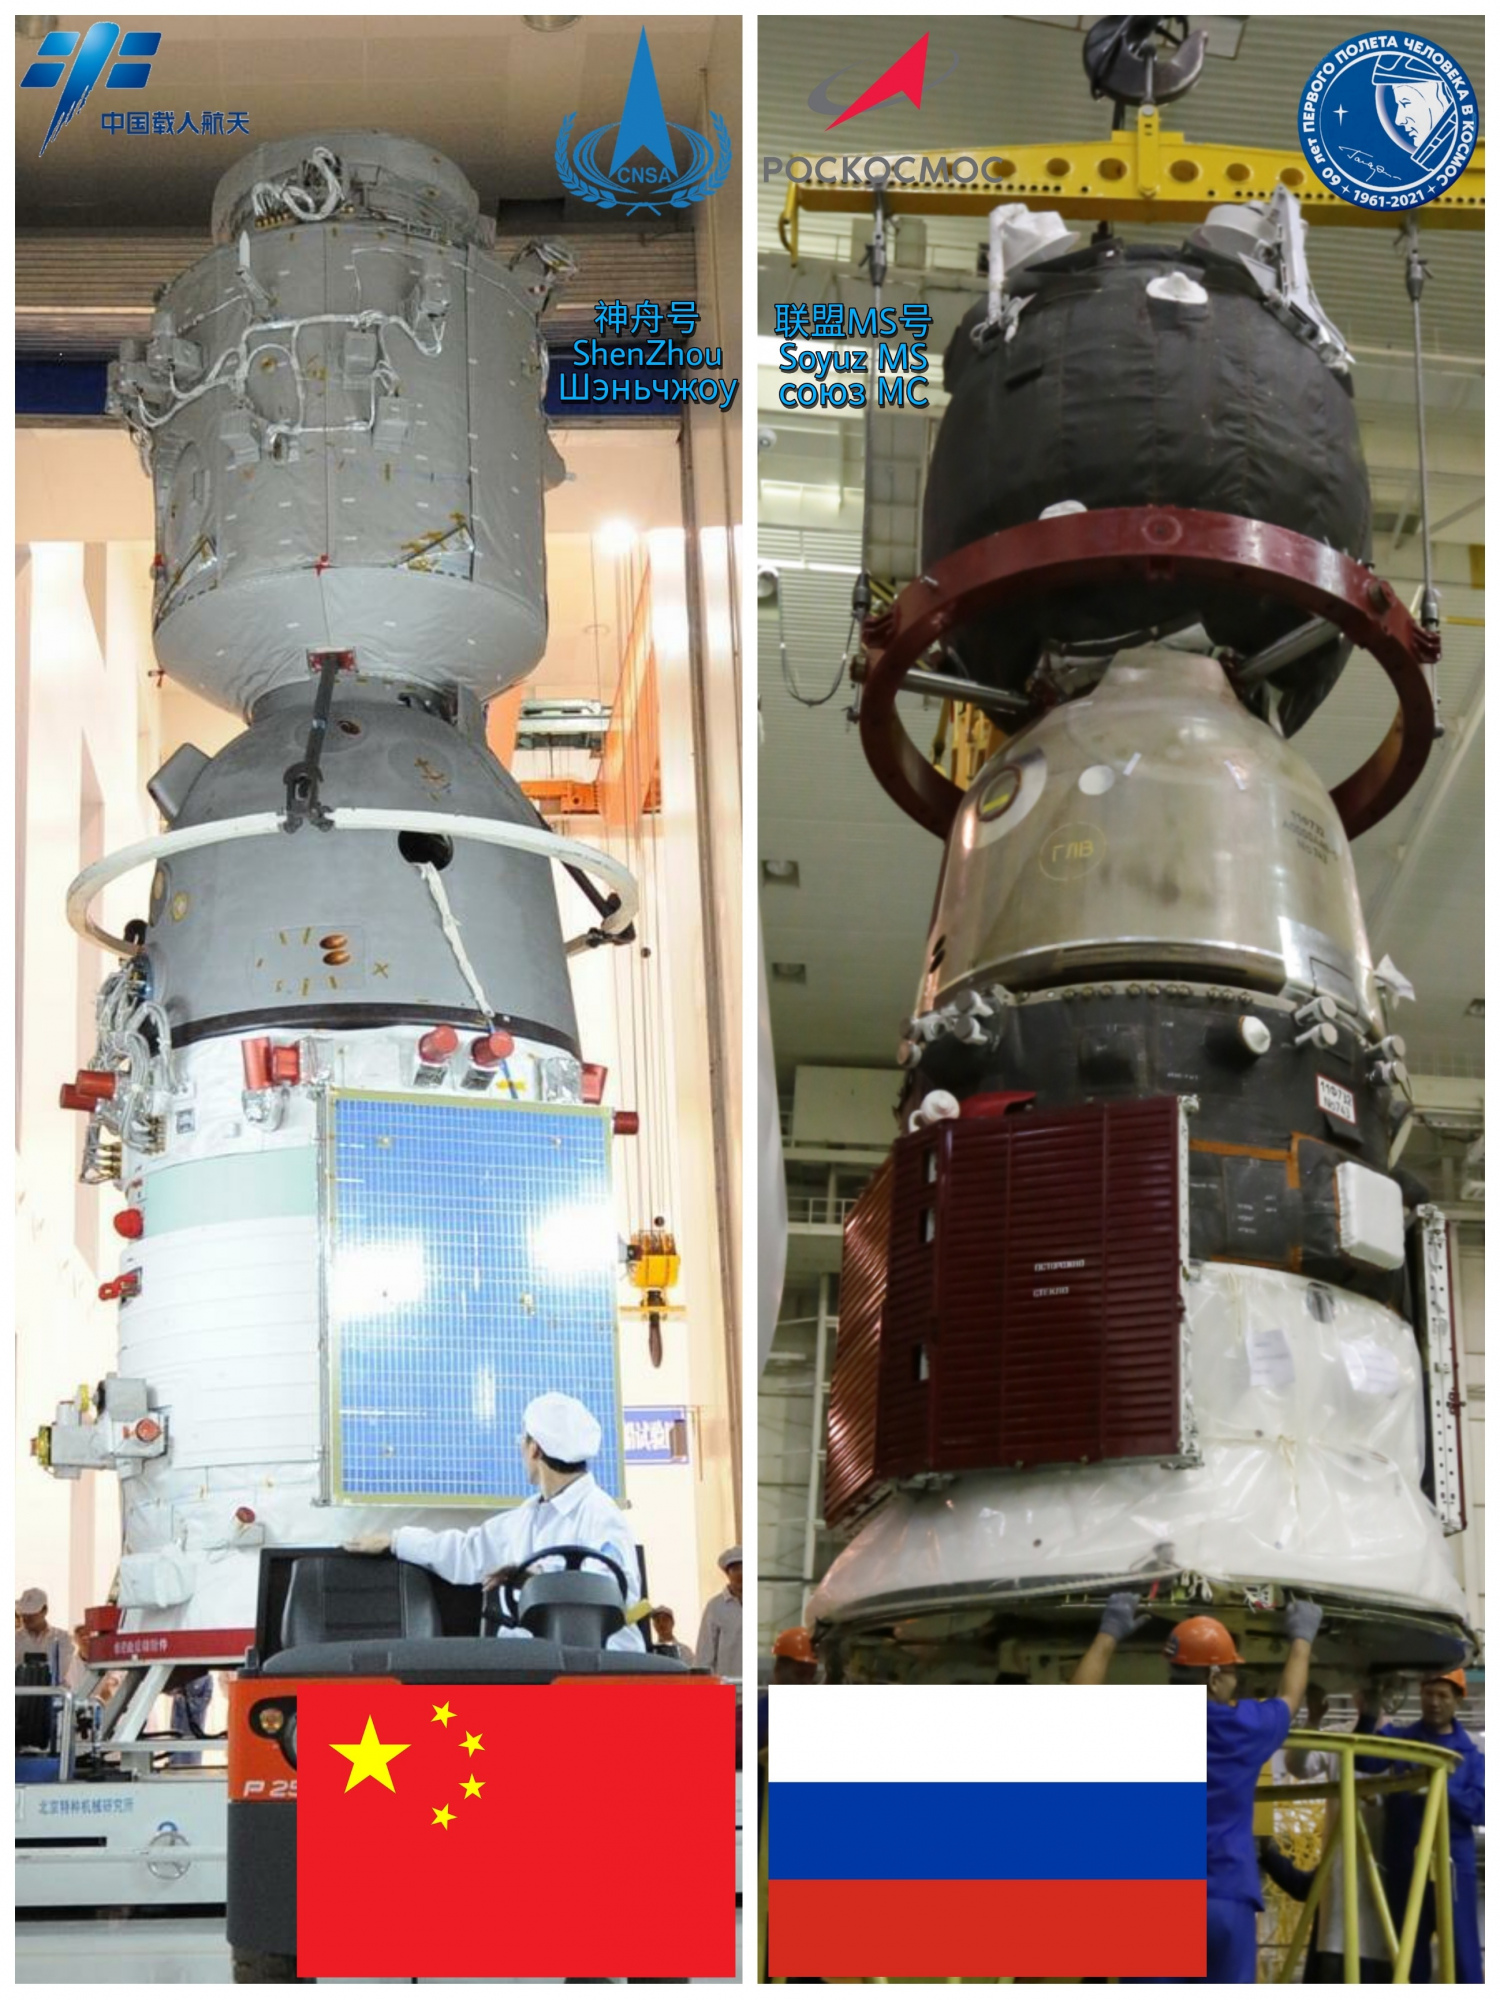 ShenZhou-vs-SoyuzMS.thumb.jpg.02f73709ef935293b8a6b1300ee26c90.jpg